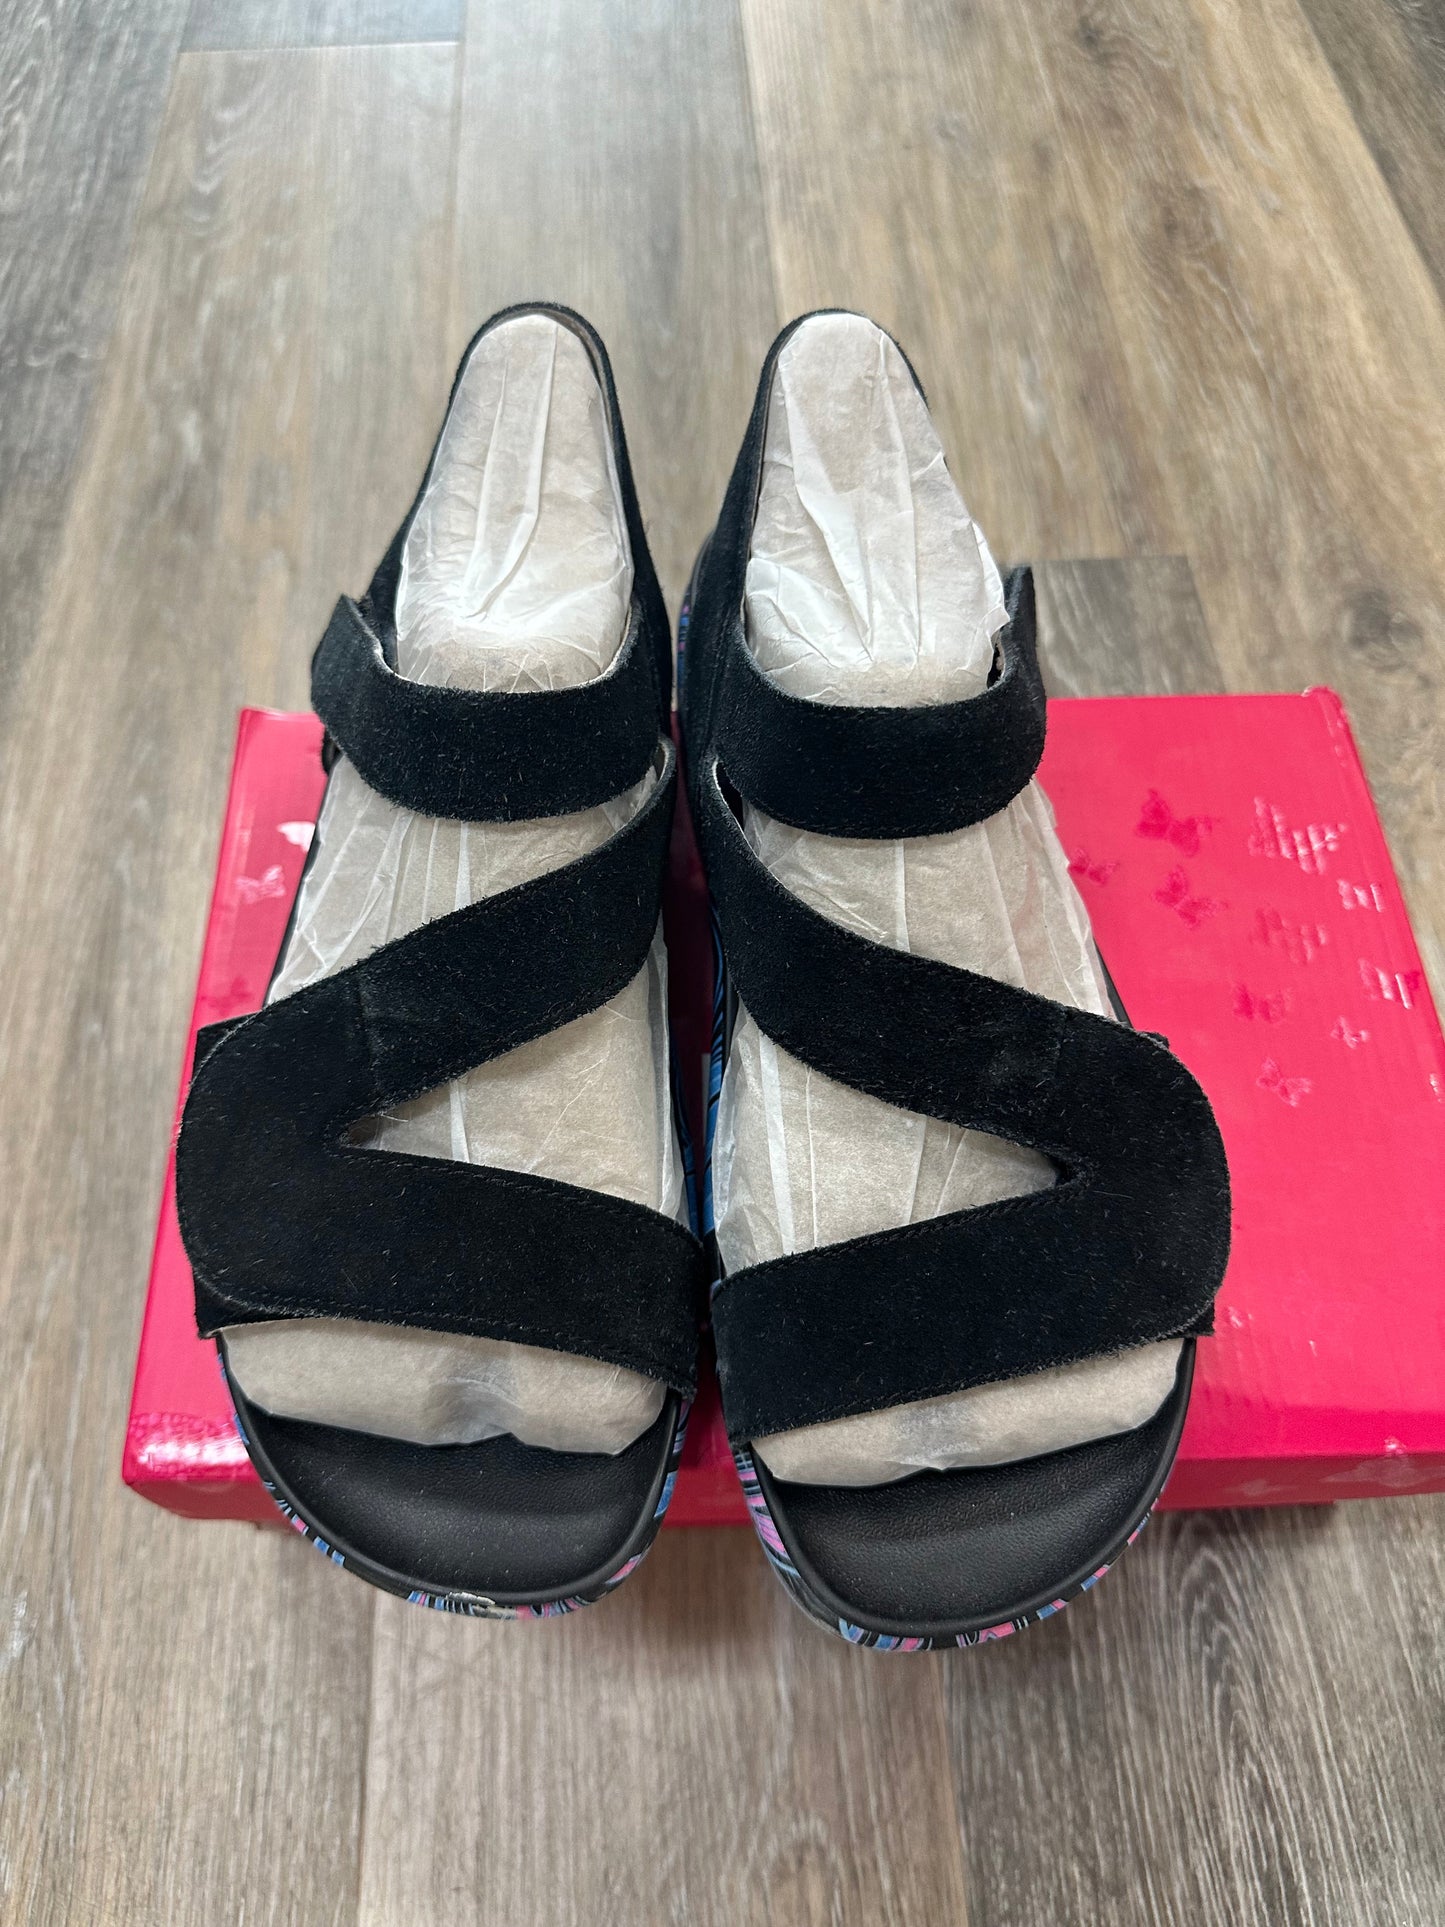 Black Sandals Flats Alegria, Size 9